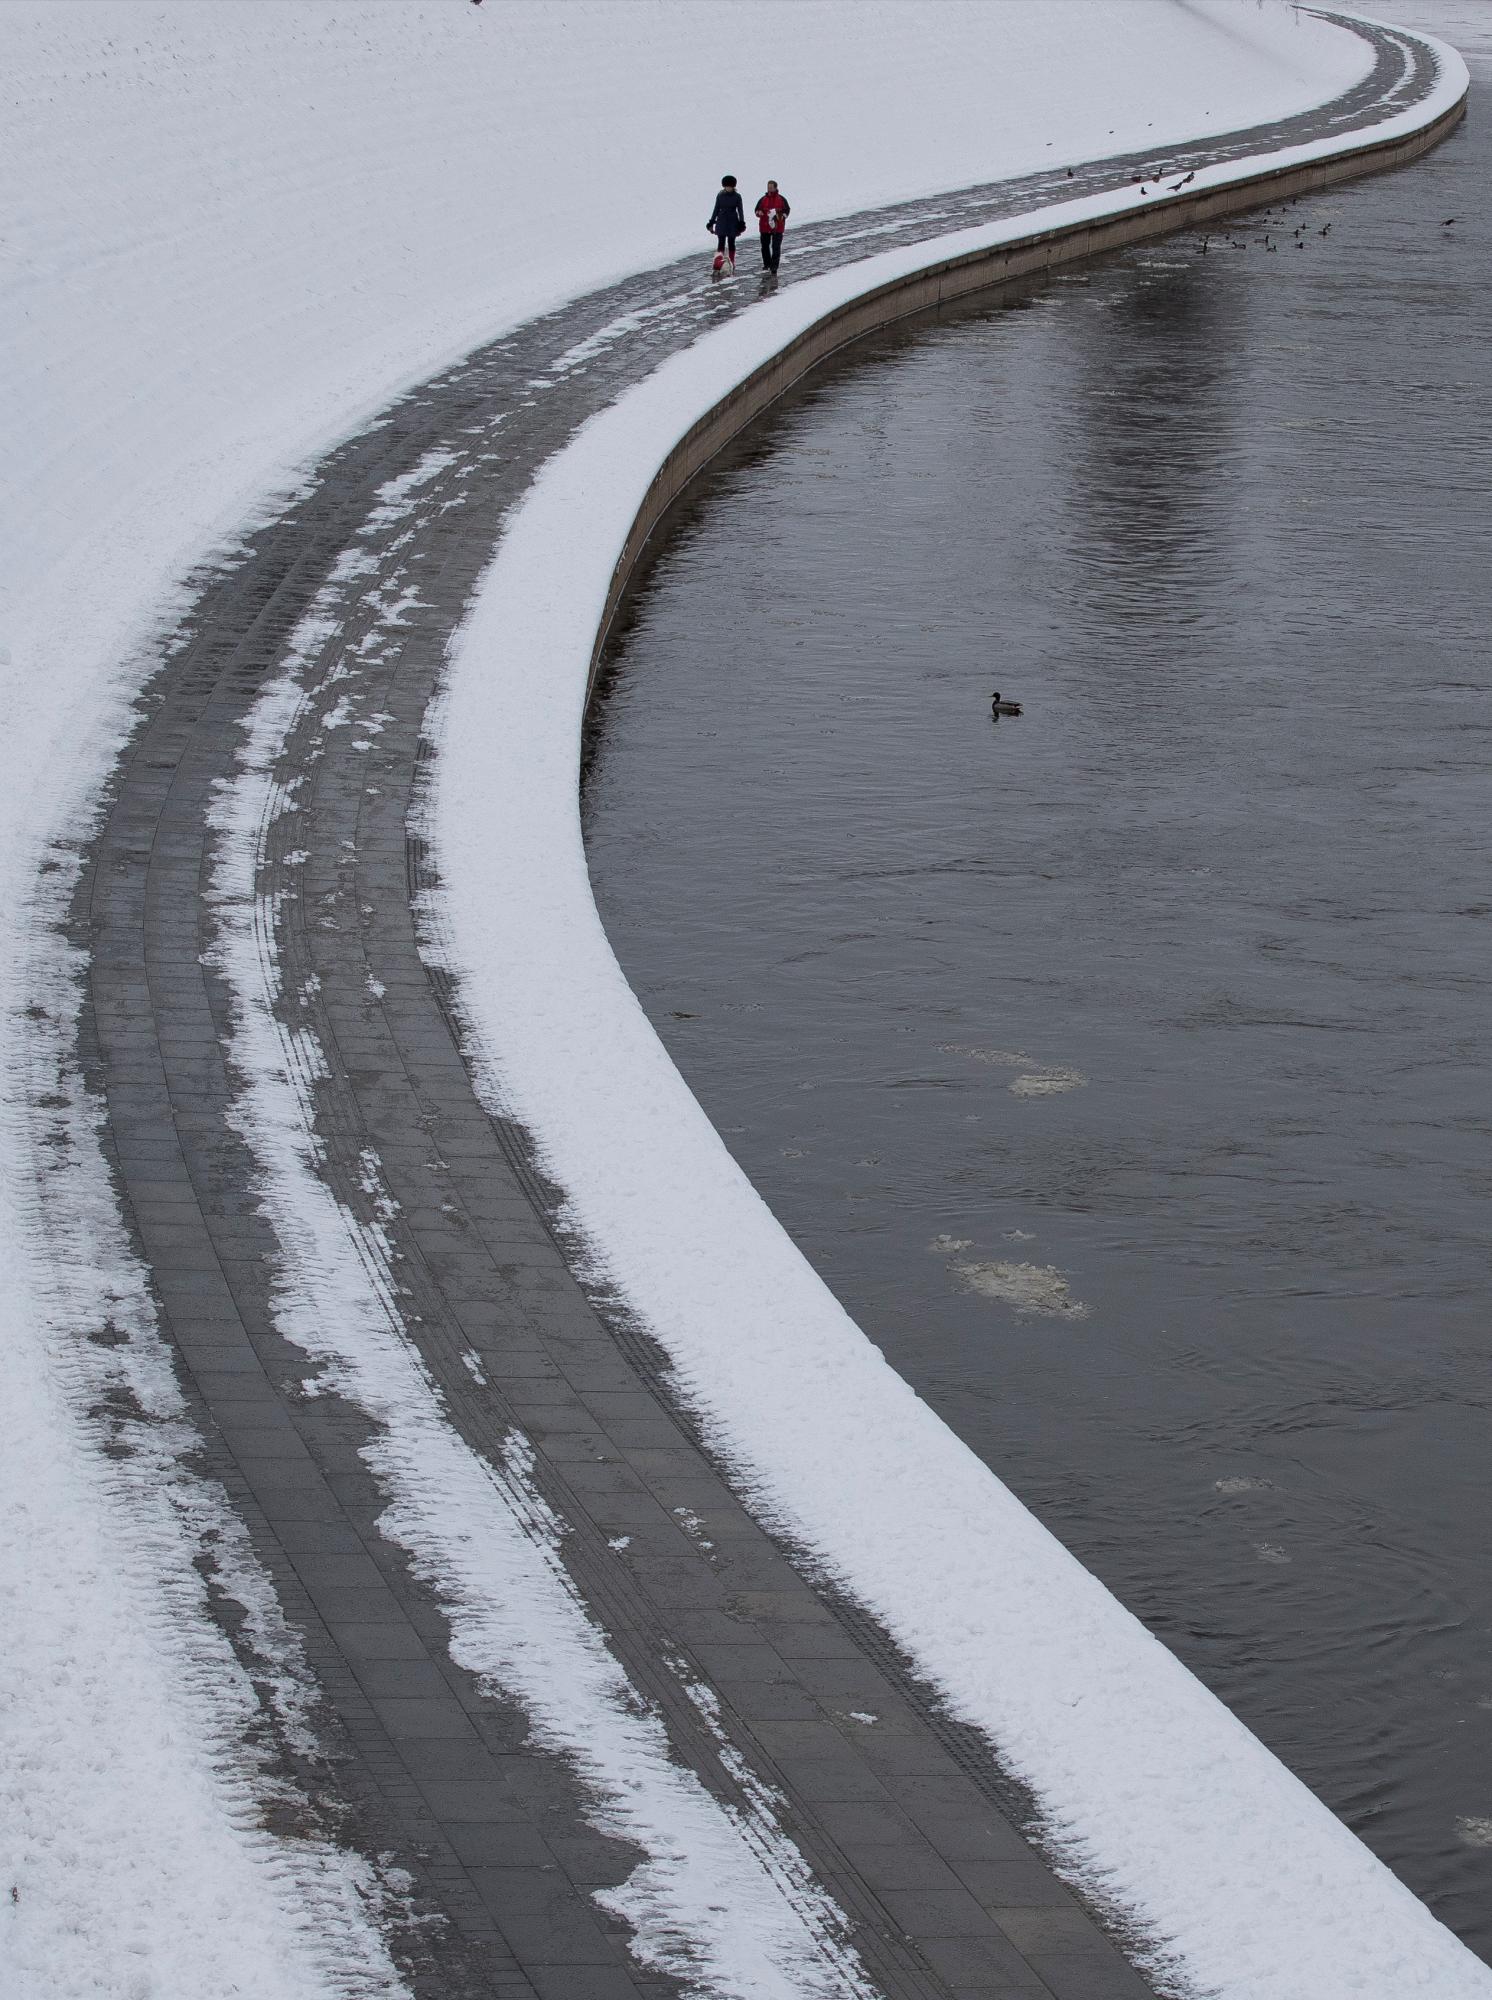 Una pareja pasea a un perro a lo largo de las orillas del río Neris en Vilnius, Lituania, sábado 5 de enero de 2019. Los residentes de la capital lituana están disfrutando de los días nevados de invierno, con temperaturas de apenas 3 grados centígrados (26.6 grados Fahrenheit).